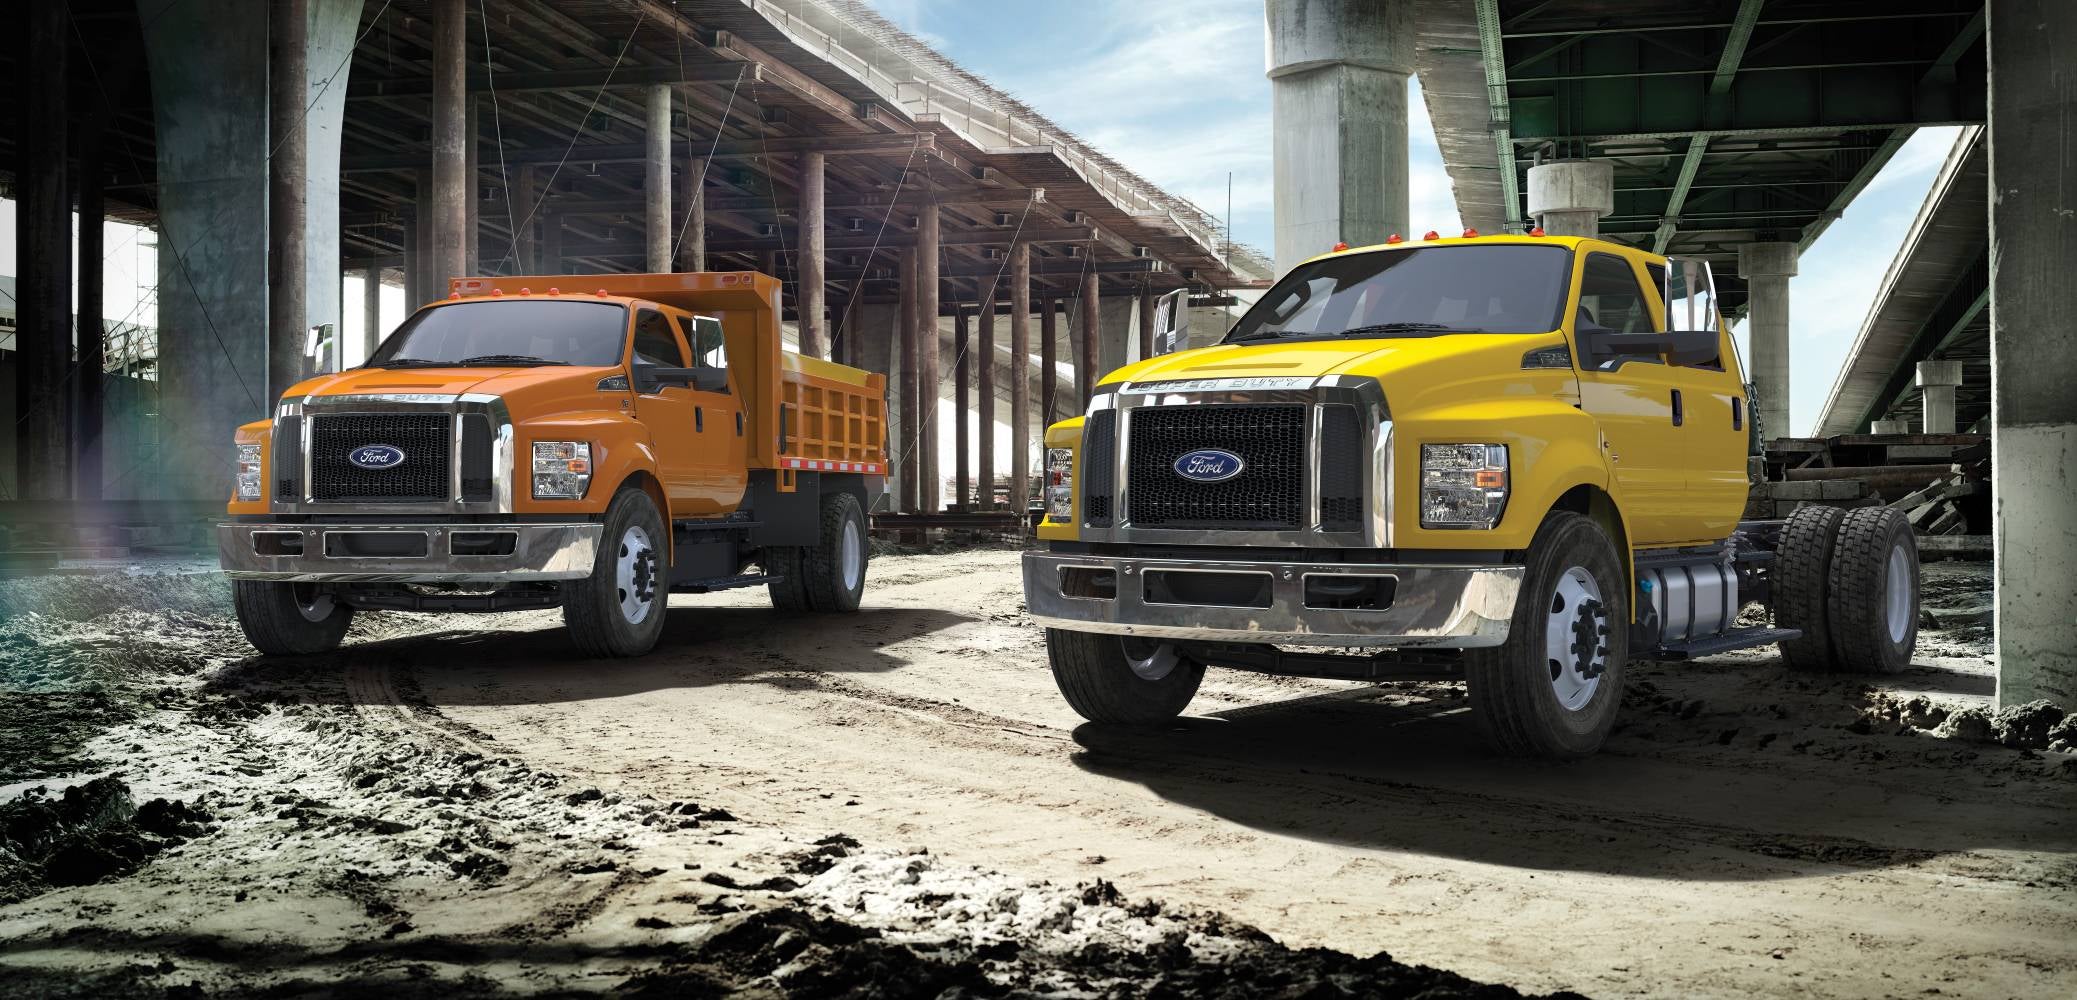 Ford Work Trucks